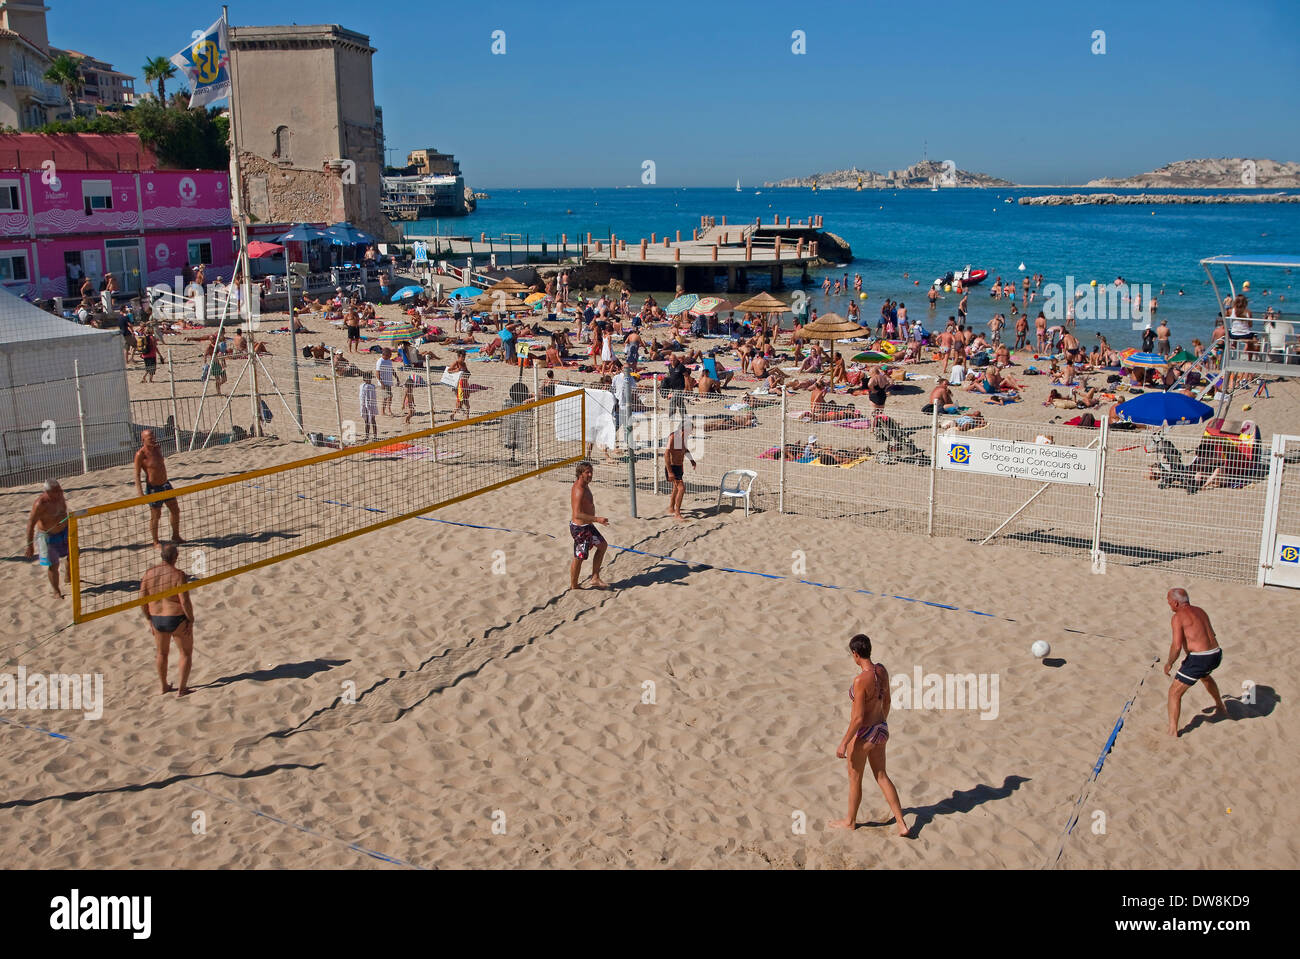 Persone a giocare a beach volley, Plage des catalani, Marsiglia, Francia Foto Stock